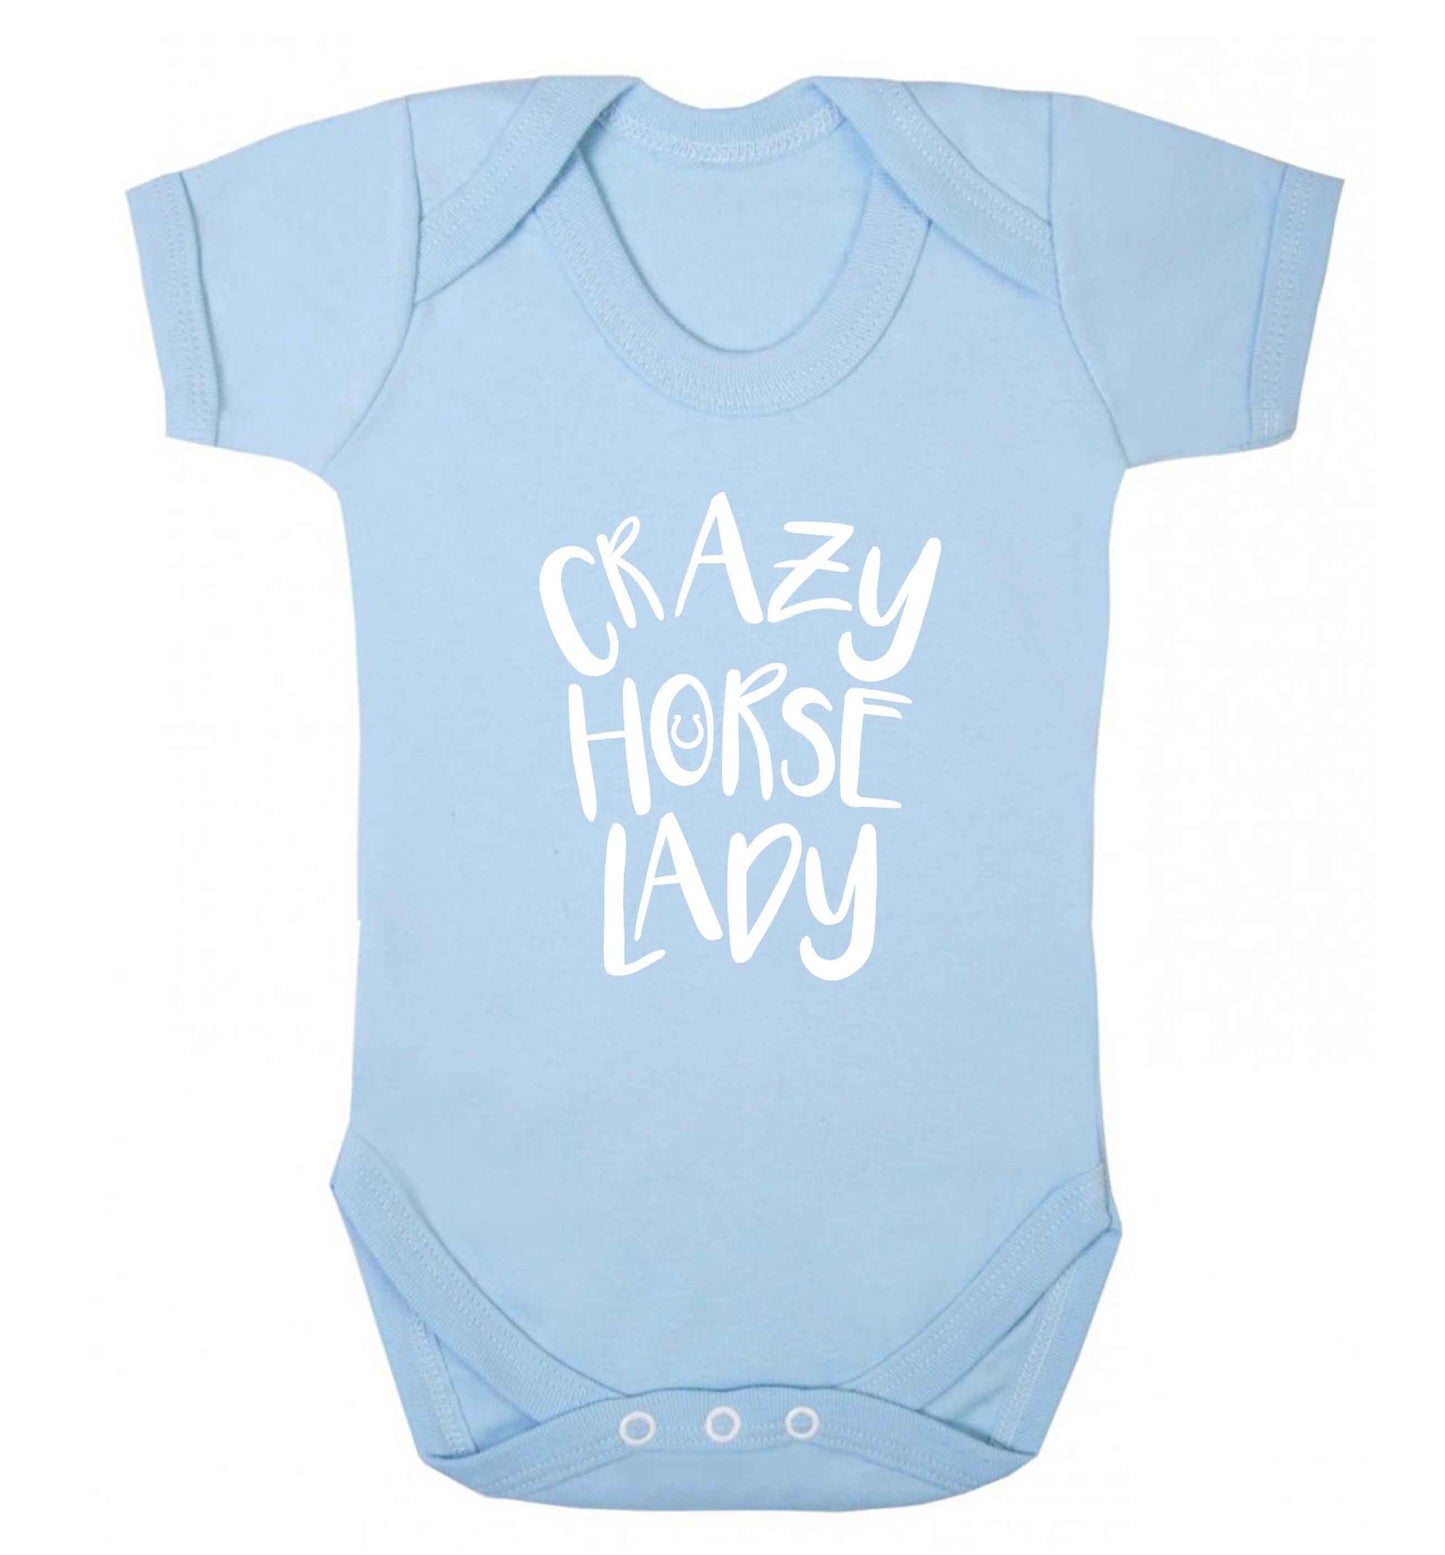 Crazy horse lady baby vest pale blue 18-24 months